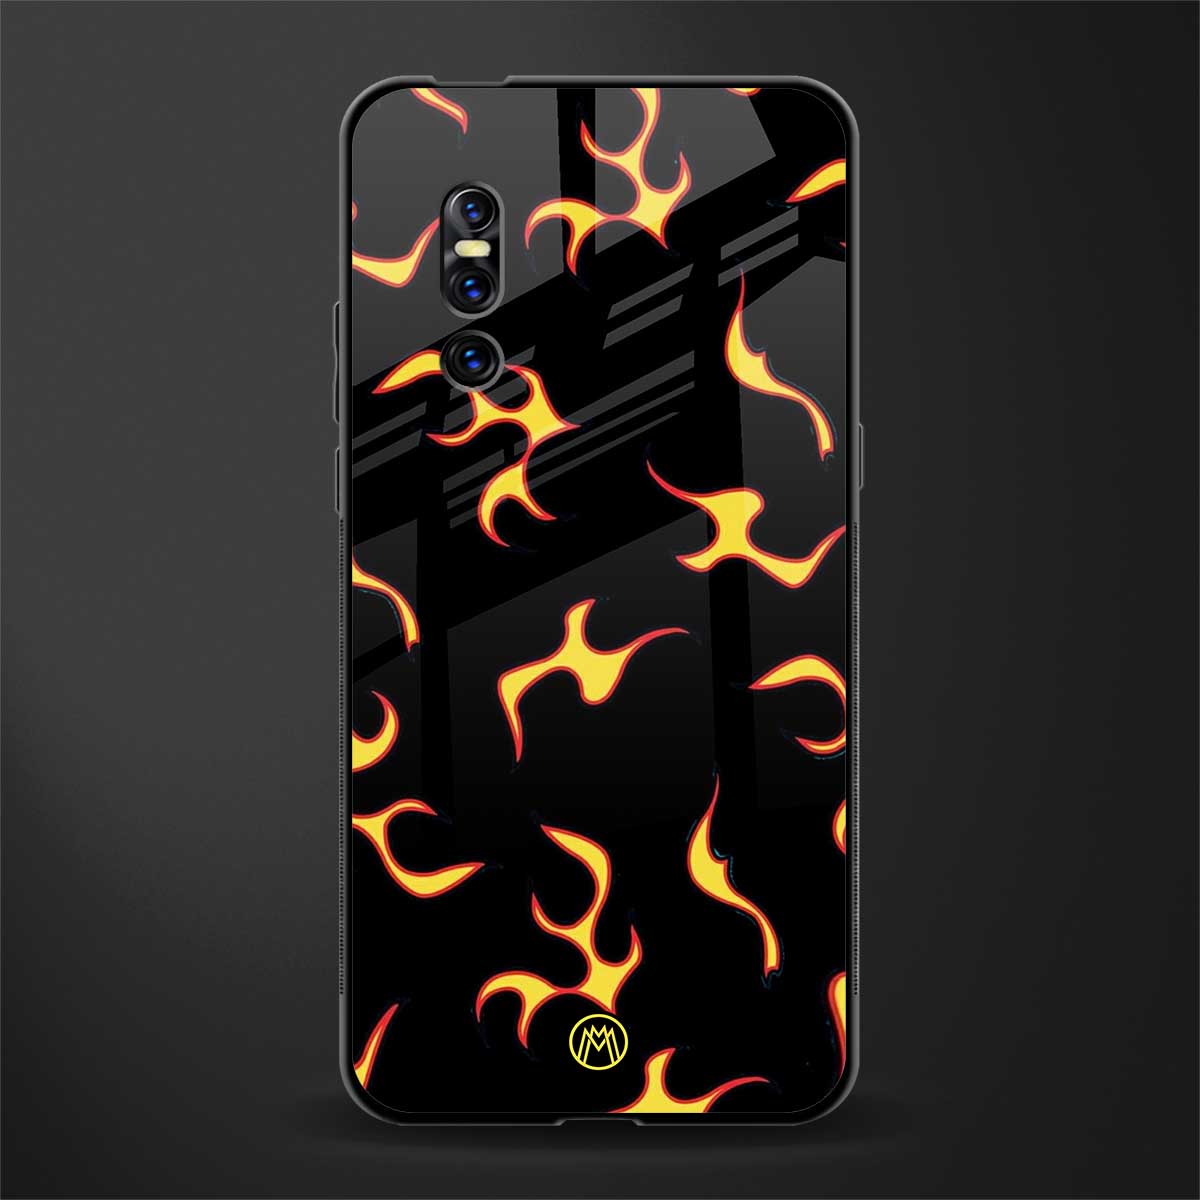 lil flames on black glass case for vivo v15 pro image